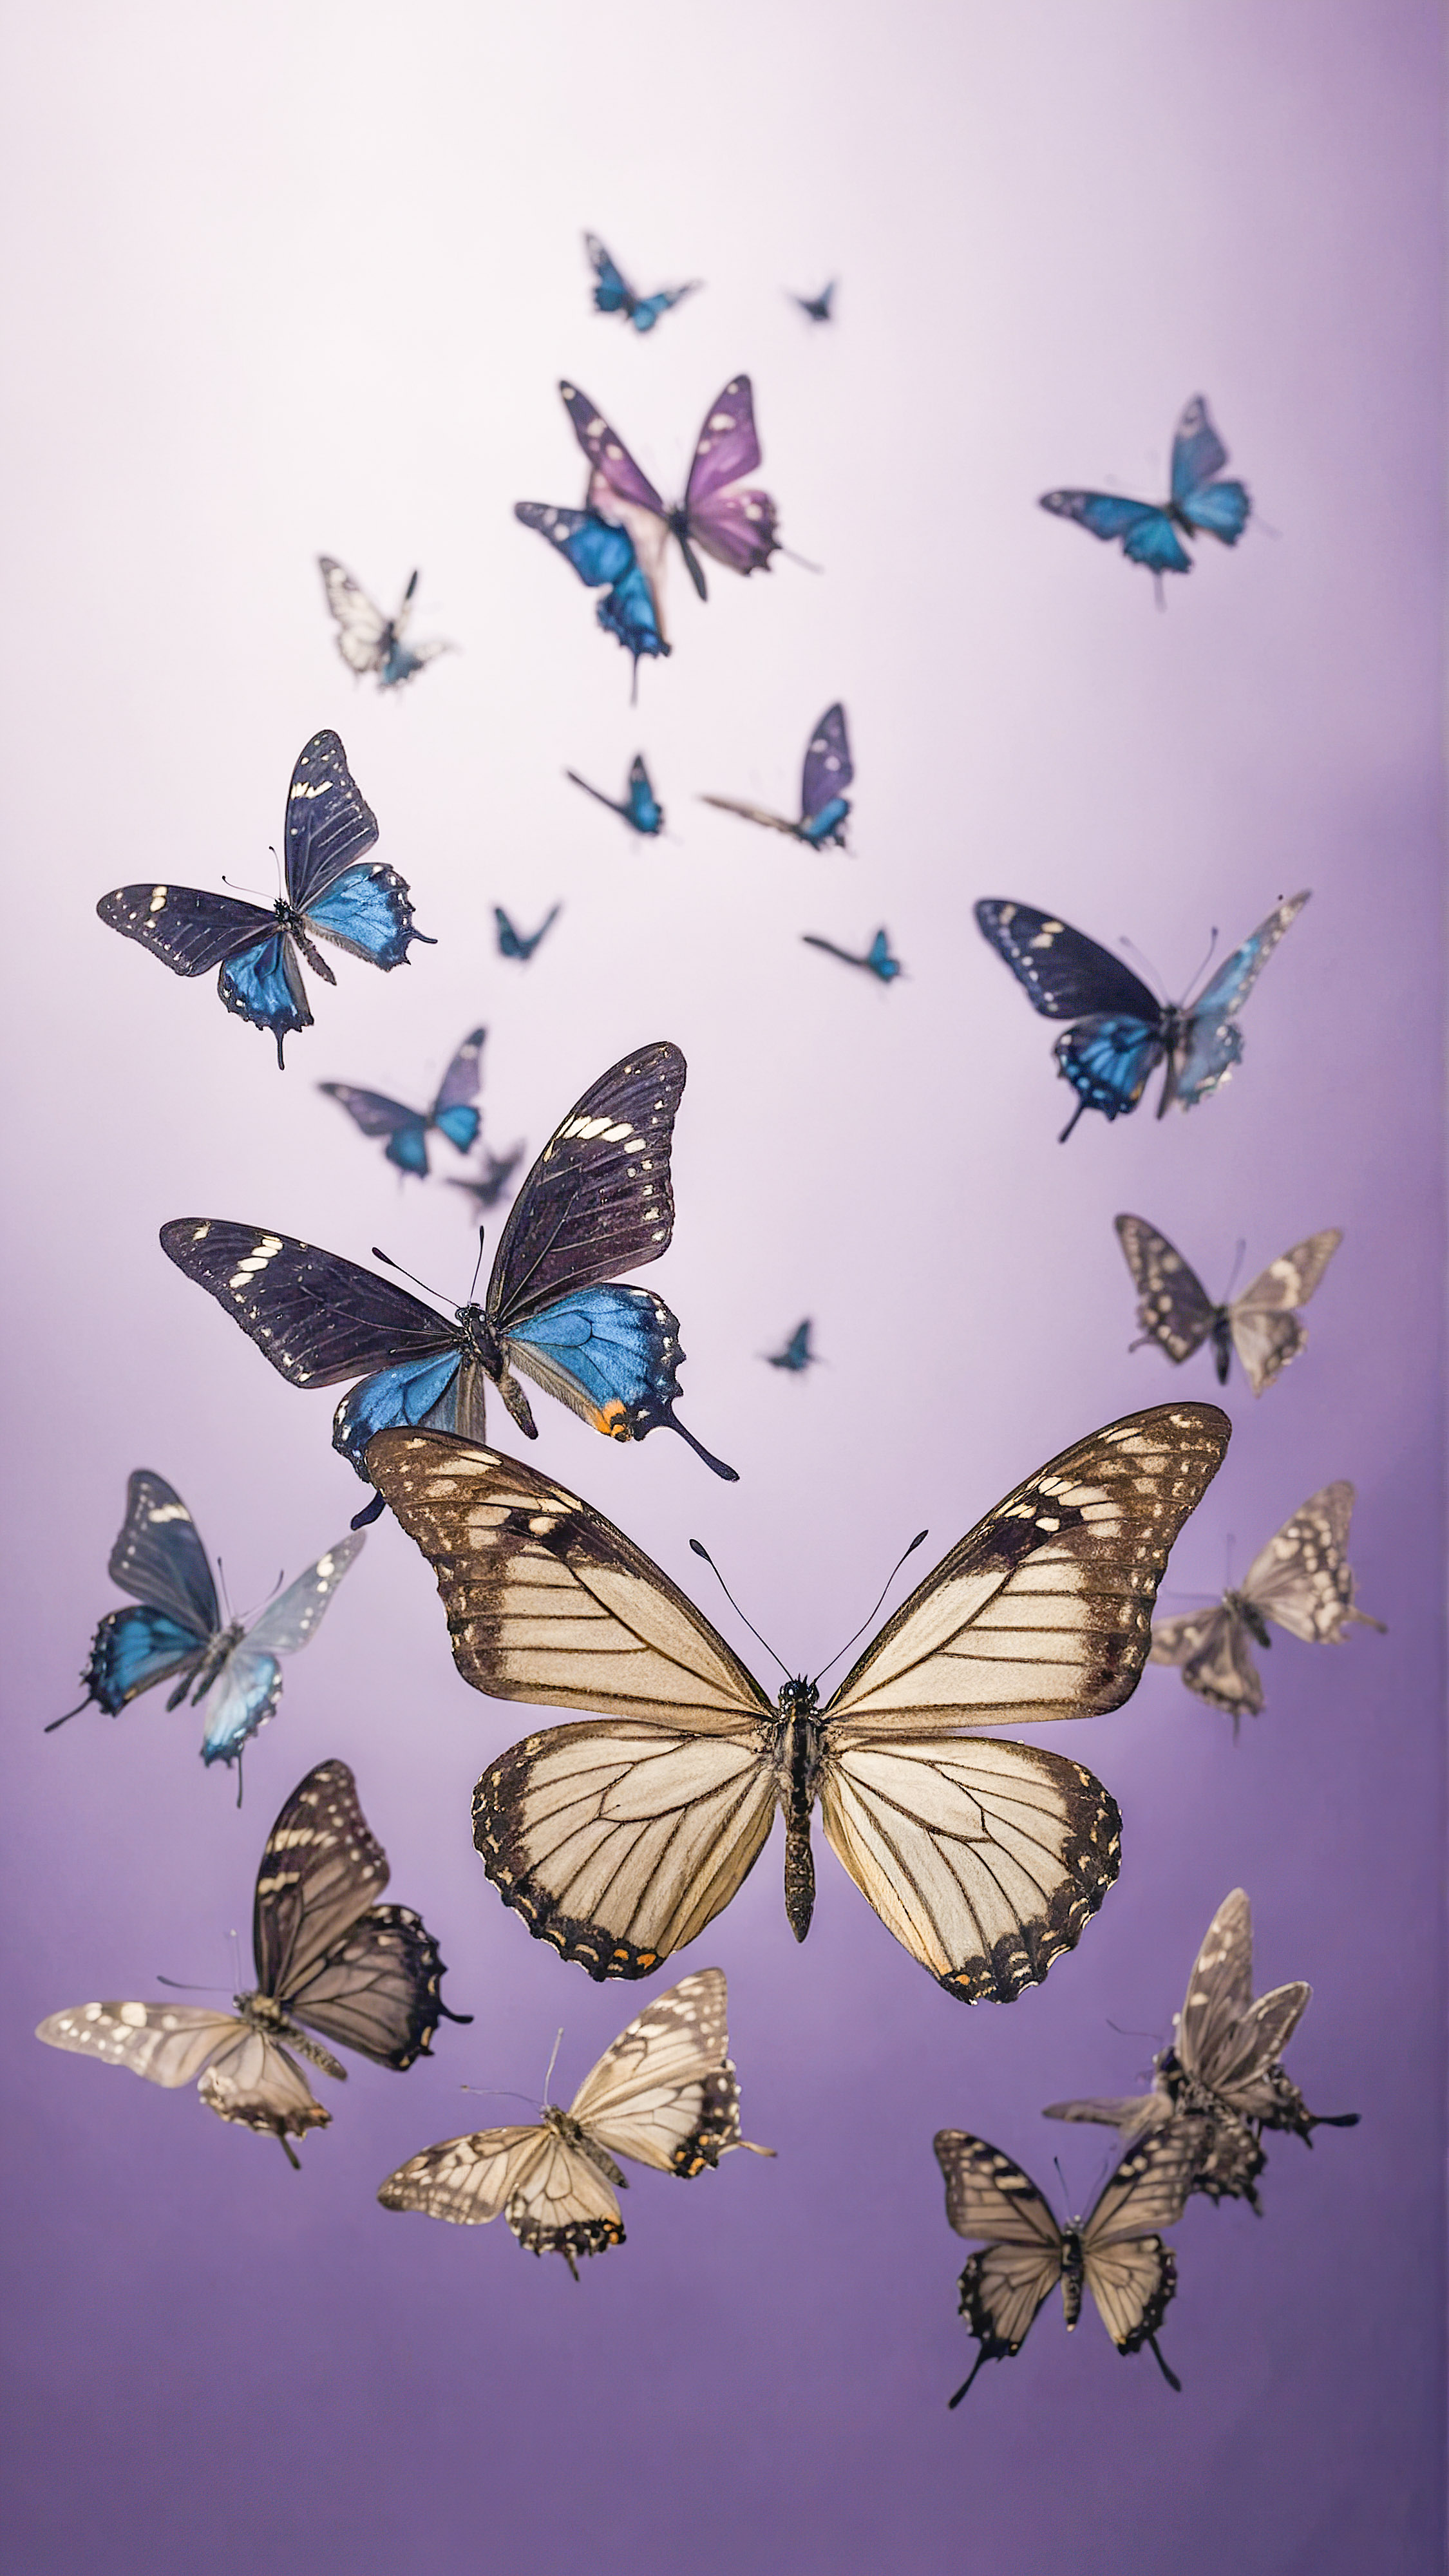 Faites l'expérience de la tranquillité avec nos beaux arrière-plans esthétiques mignons pour iPhone, présentant de petits papillons noirs voltigeant contre un arrière-plan violet doux.